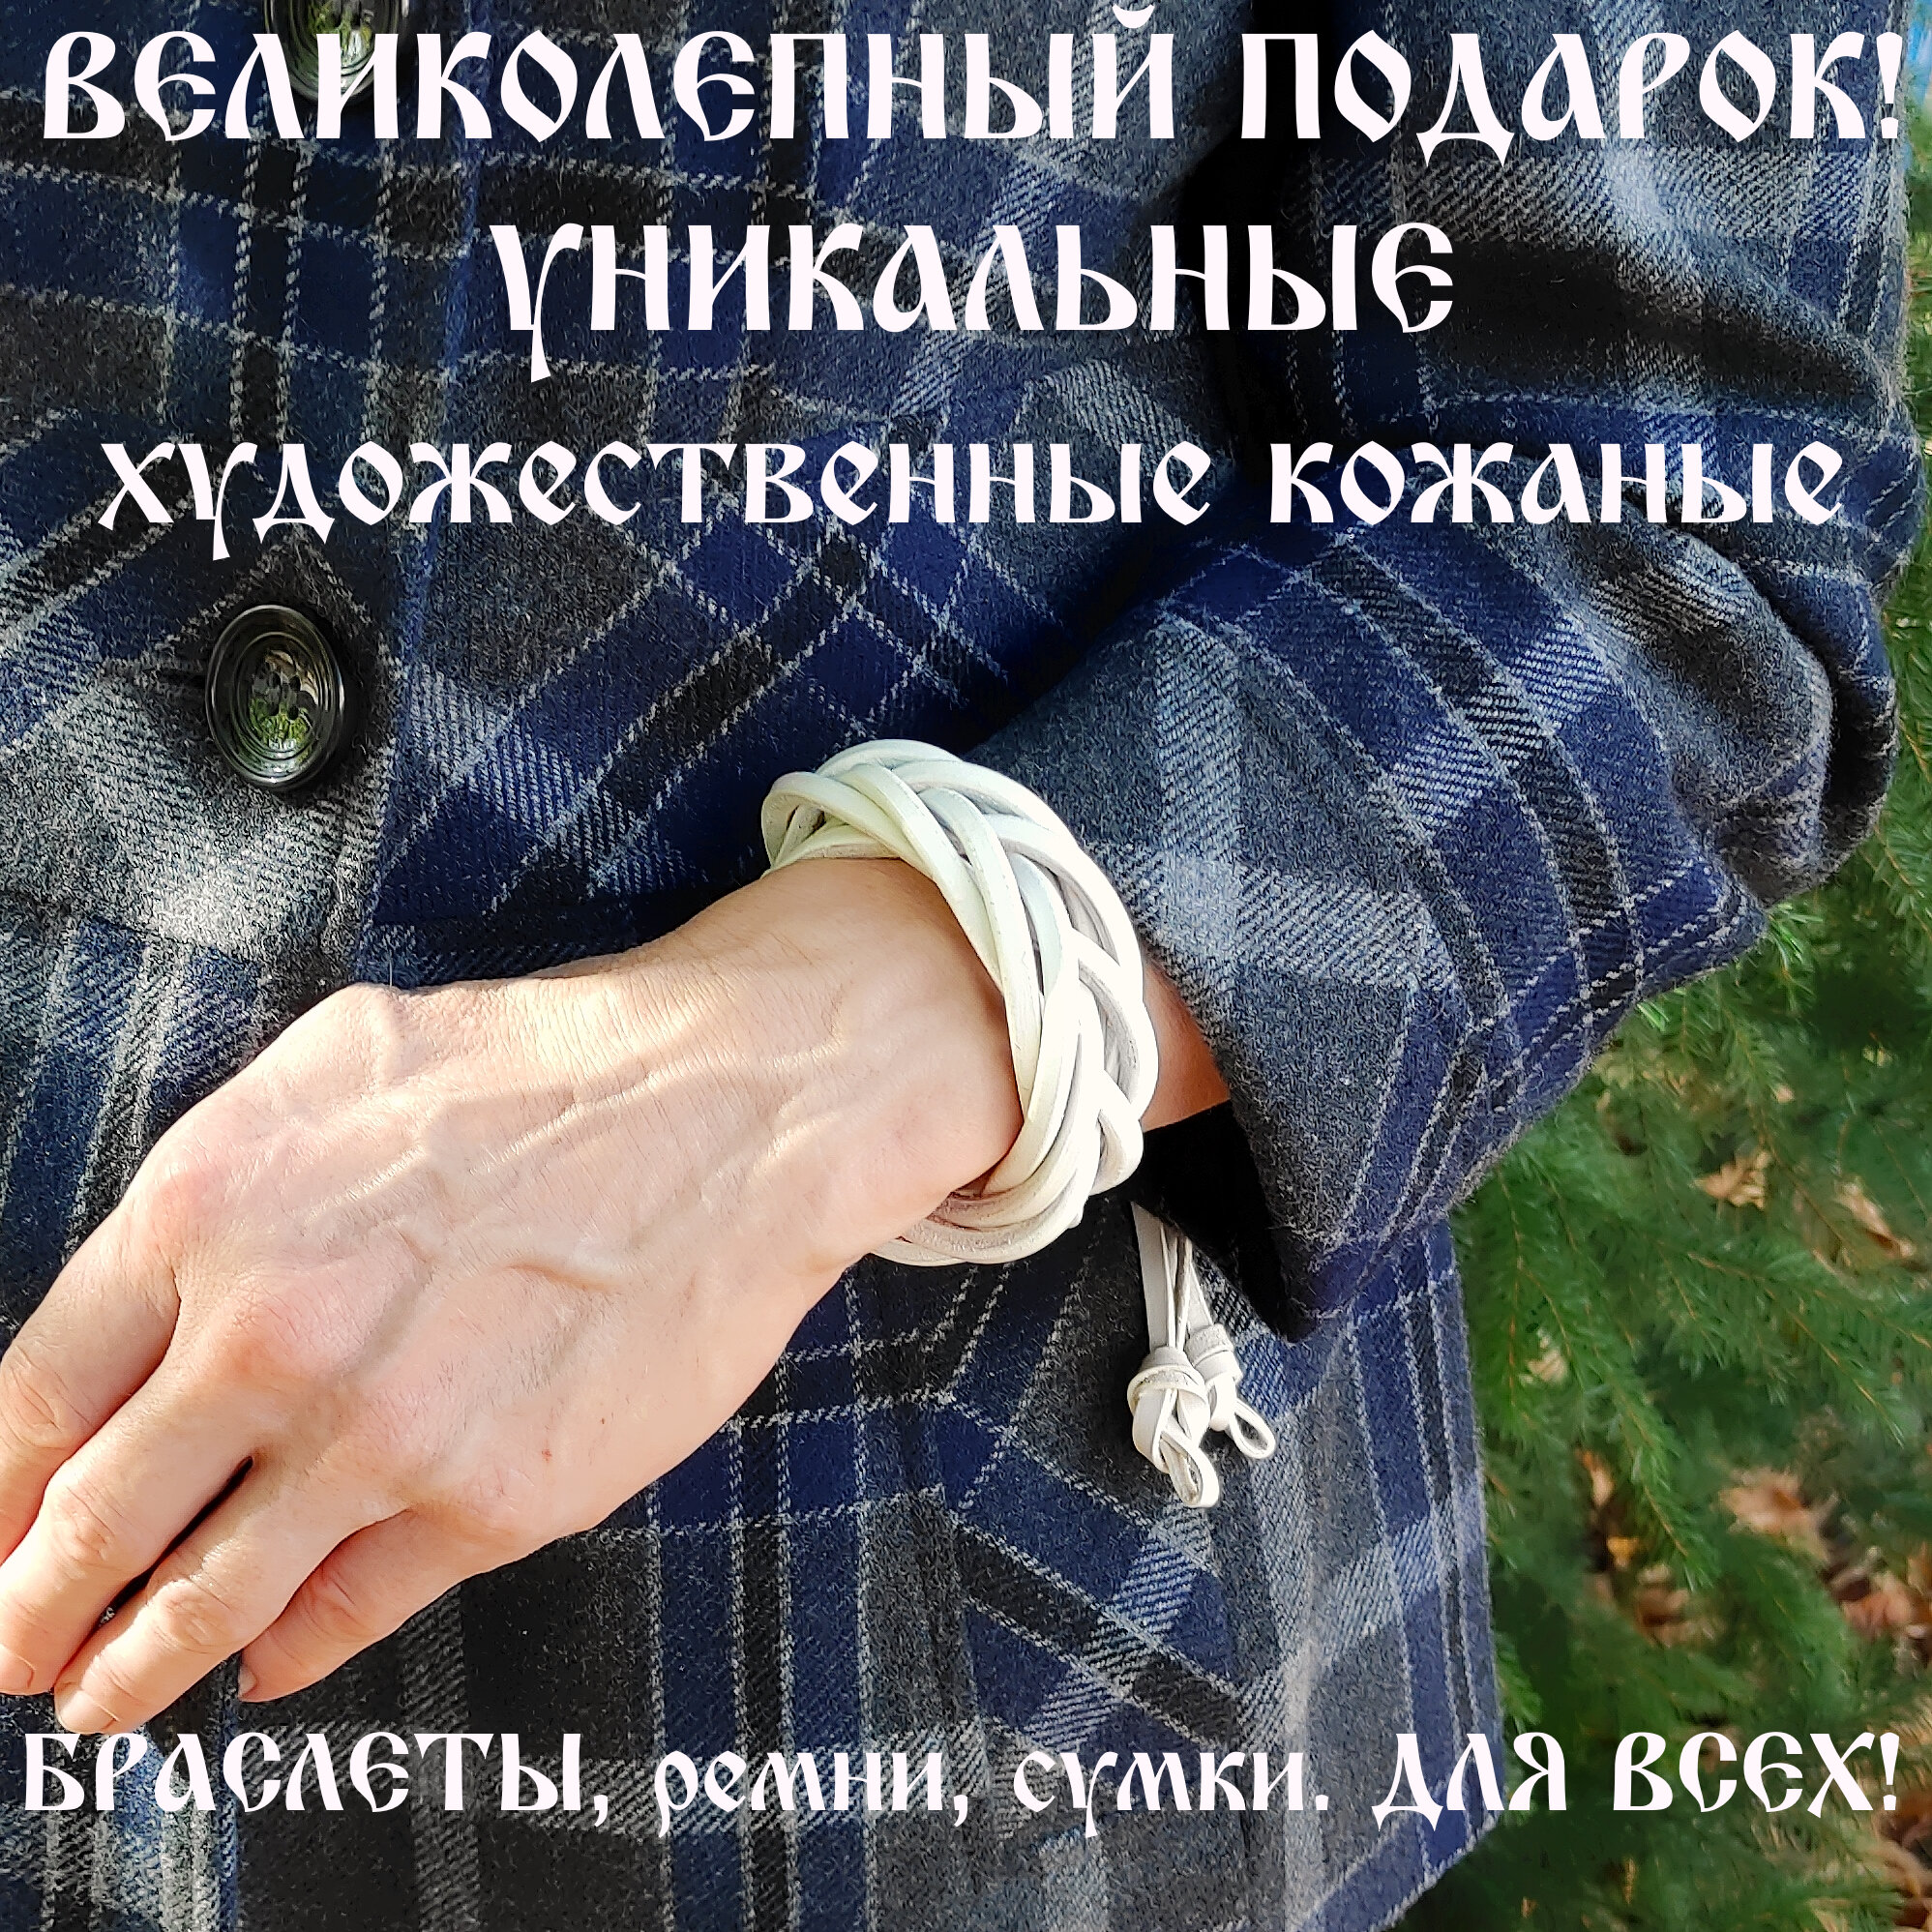 Славянский оберег, плетеный браслет Браслет кожаный ручной работы "Косичка Белая 7 полос"